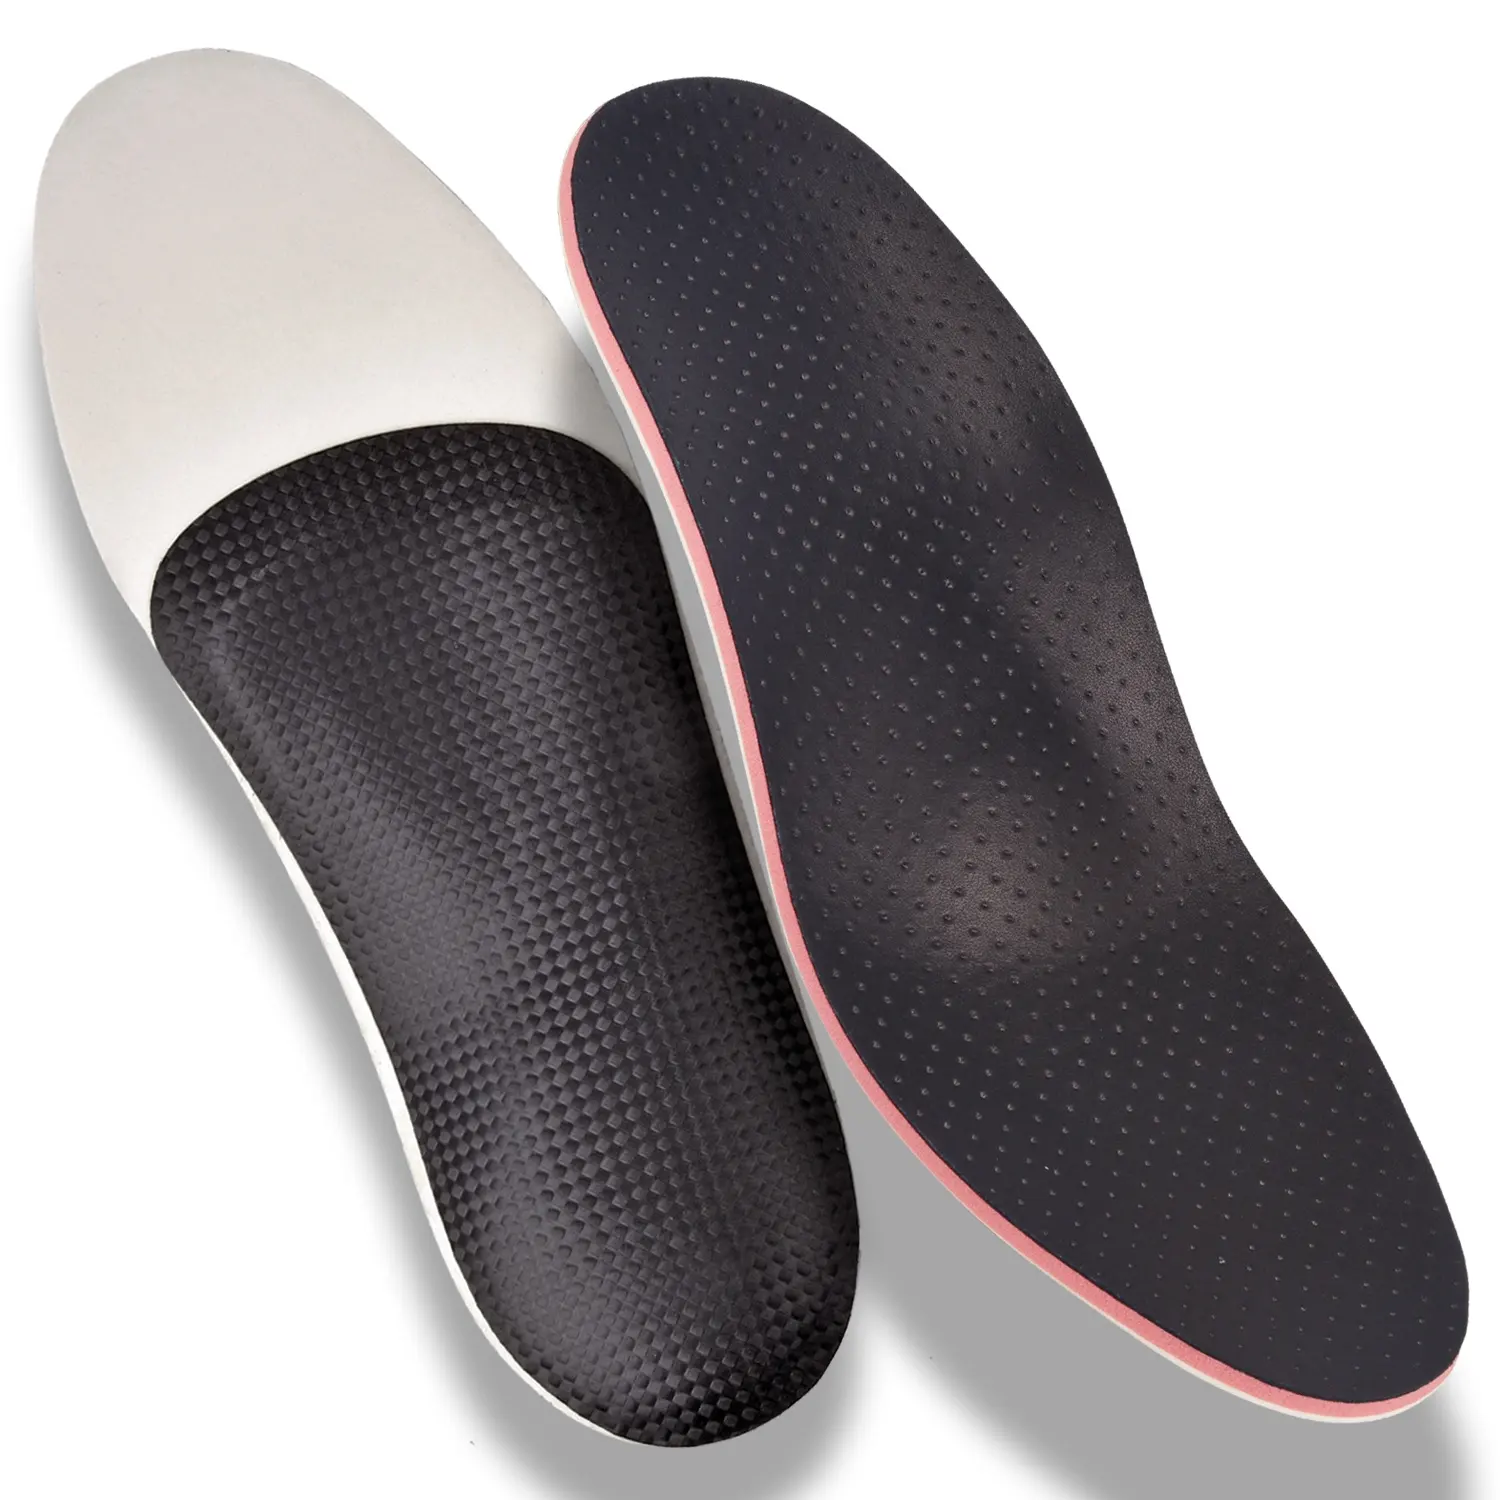 แผ่นรองอุ้งเท้าแบบออร์โทเพน P6L,แผ่นรองอุ้งเท้าแบบเฉพาะด้านรองรับความร้อนเท้าแบนพื้นรองเท้าเทอร์โมพลาสติกรองรับสรีระ